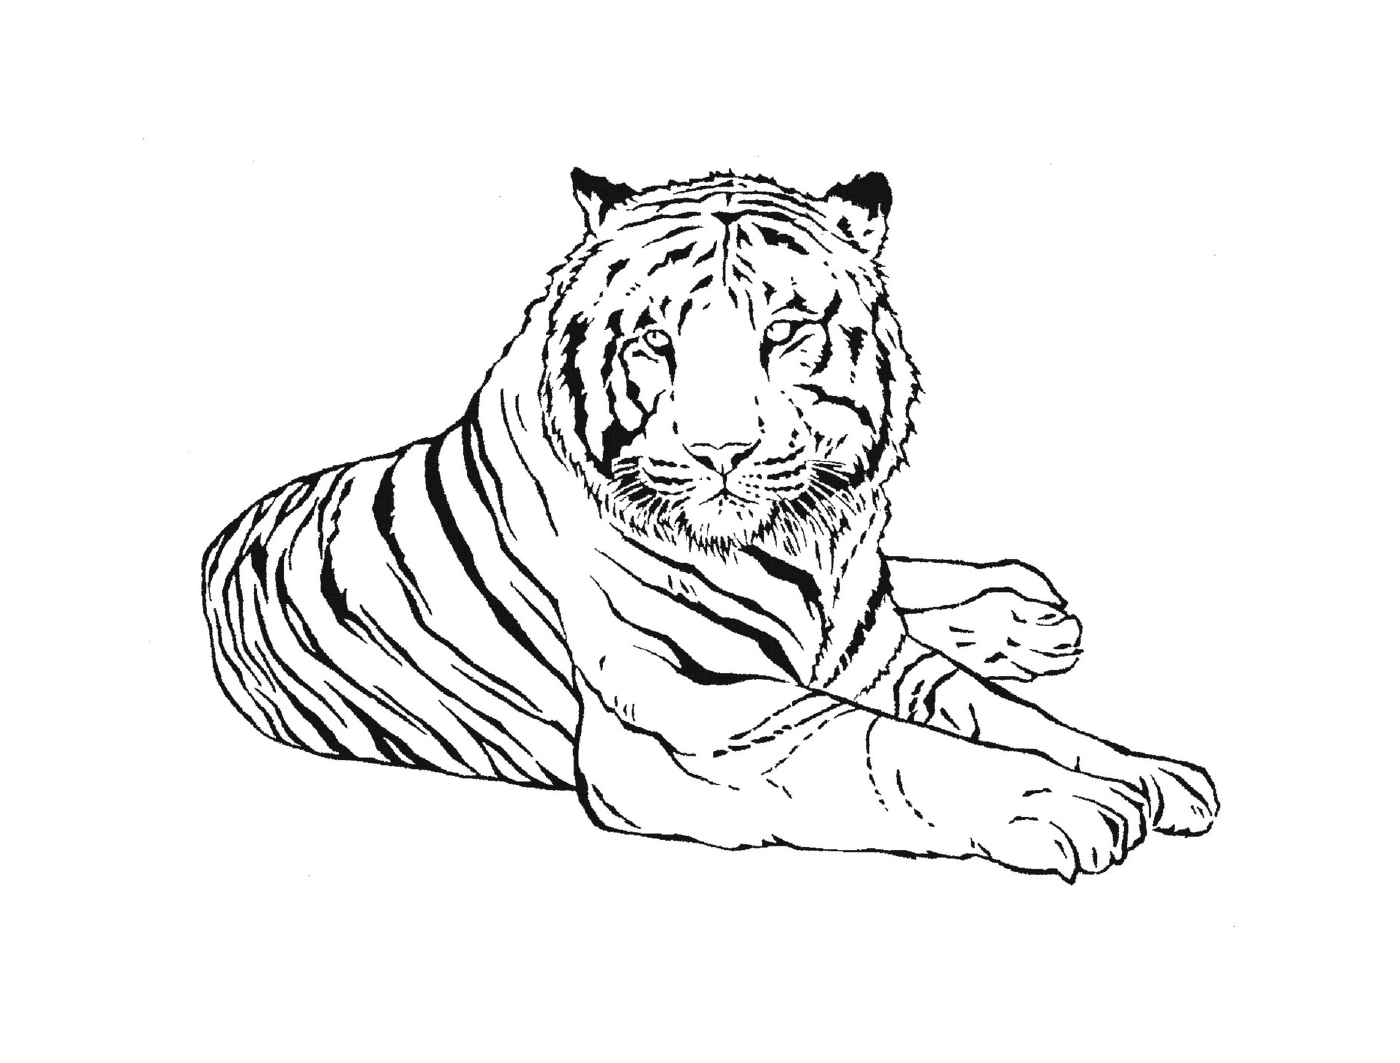  तूफानी हवा के क्षेत्र से एक बाघ 